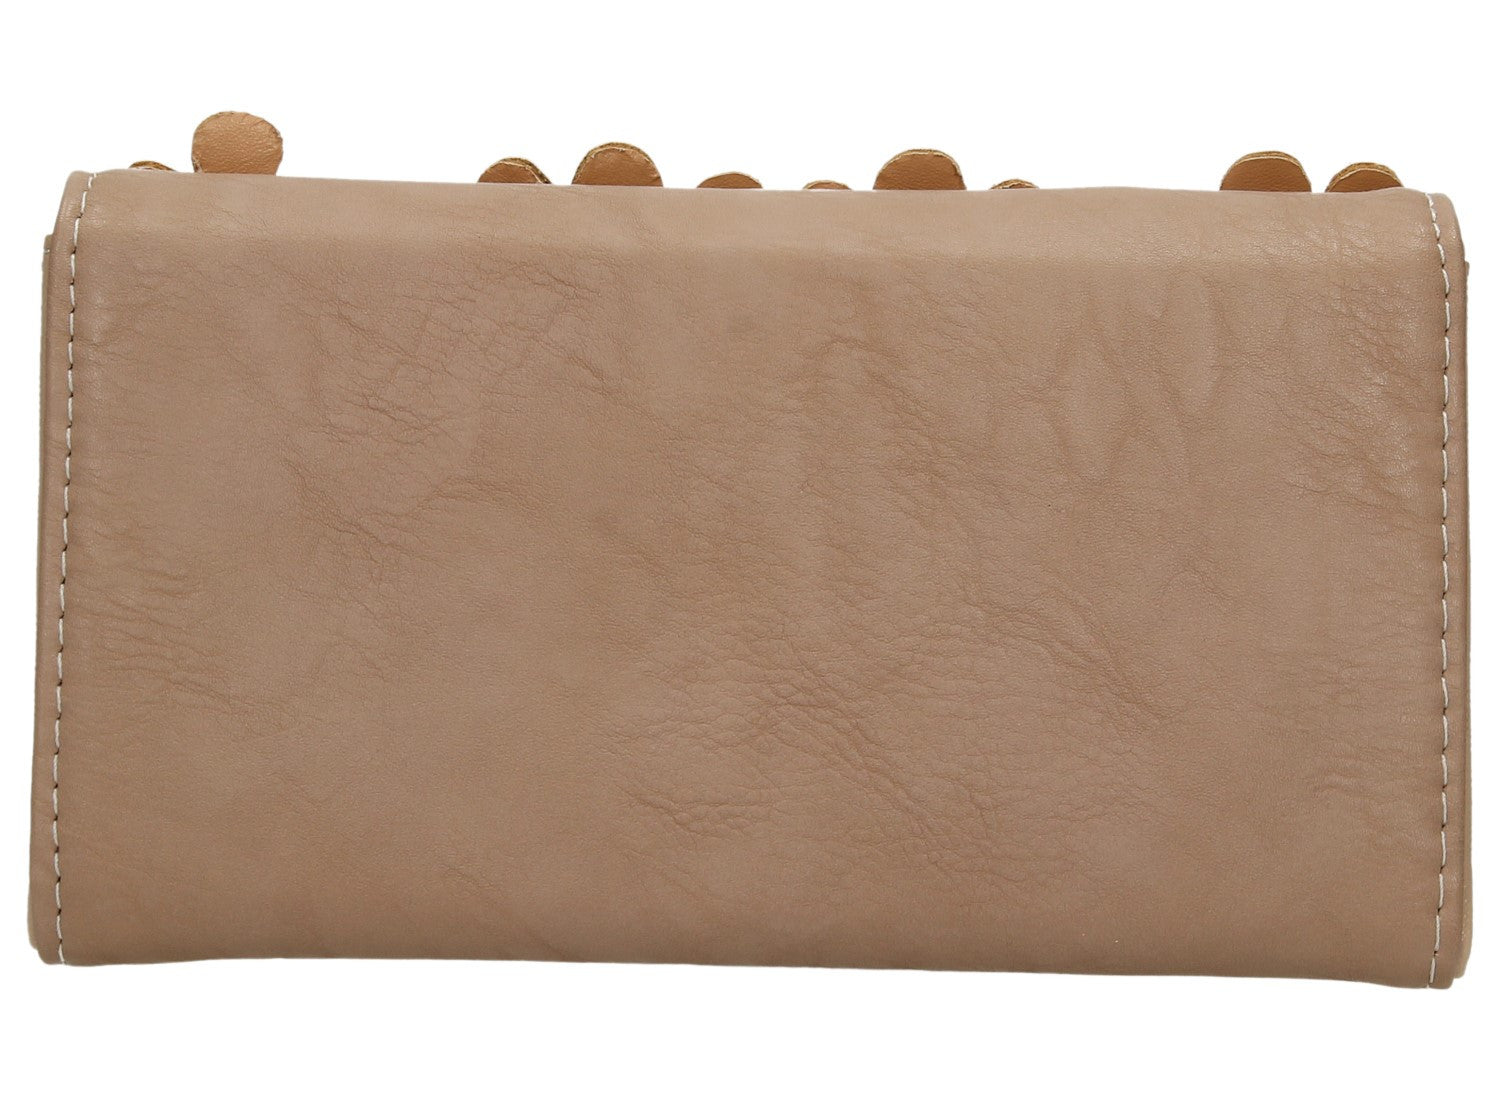 Swanky Swank Demi Daisy Motif Leather Purse Mink PinkCheap Cute School Wallets Purses Bags Animal